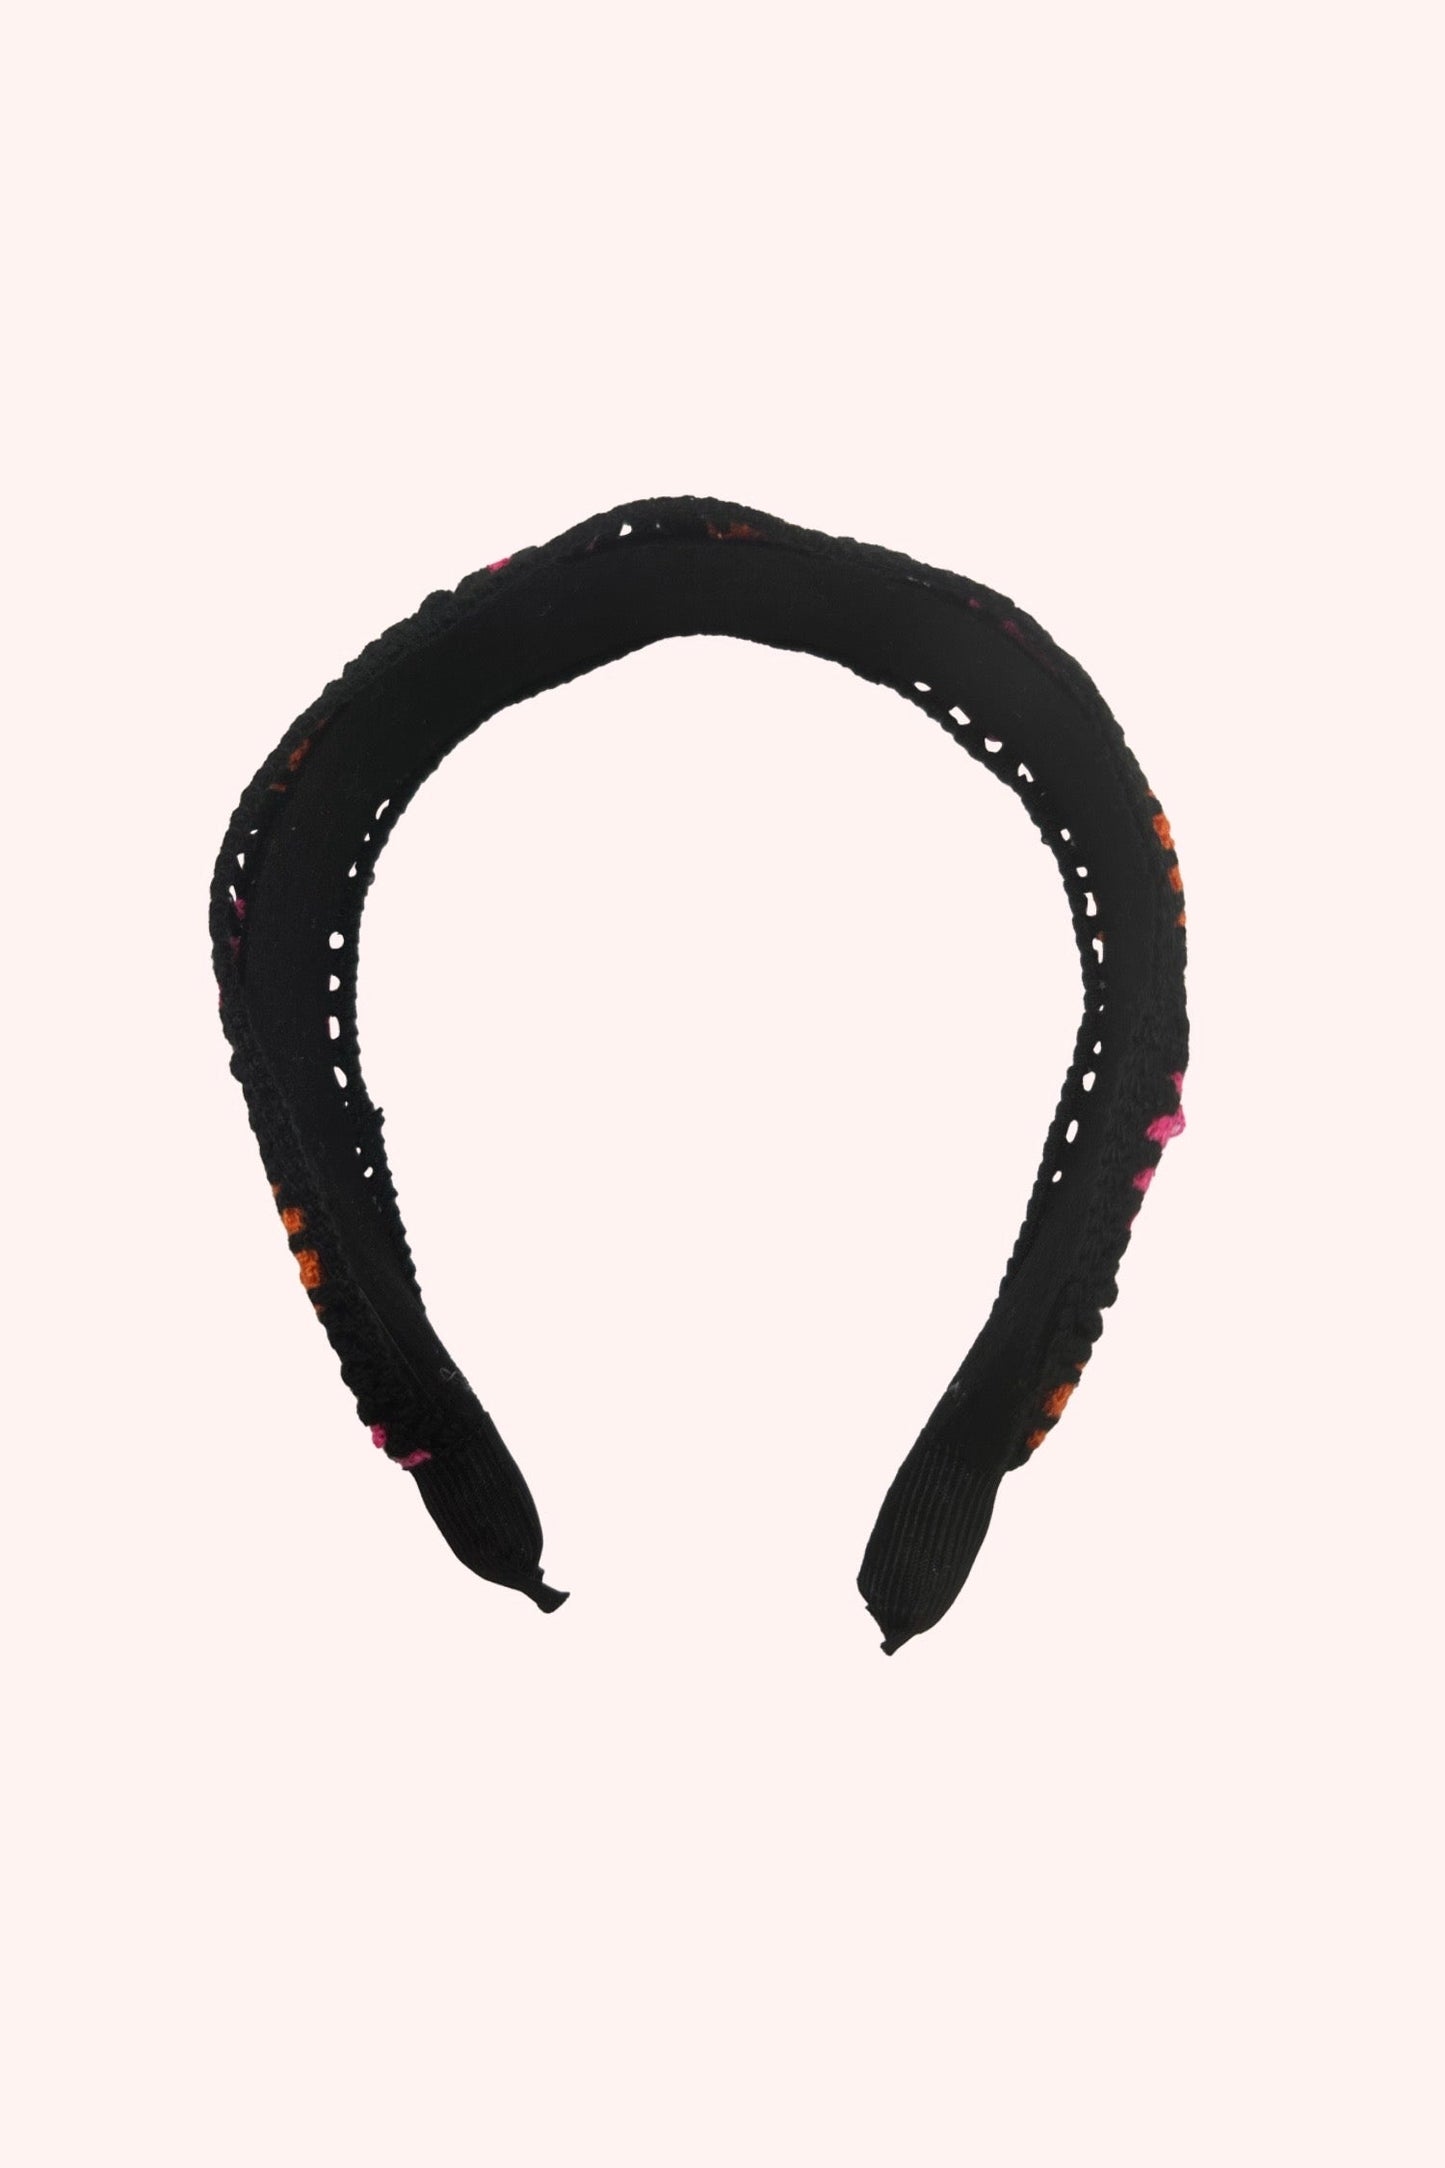 Floral Crochet Play Headband Pink Multi on black, omega shape